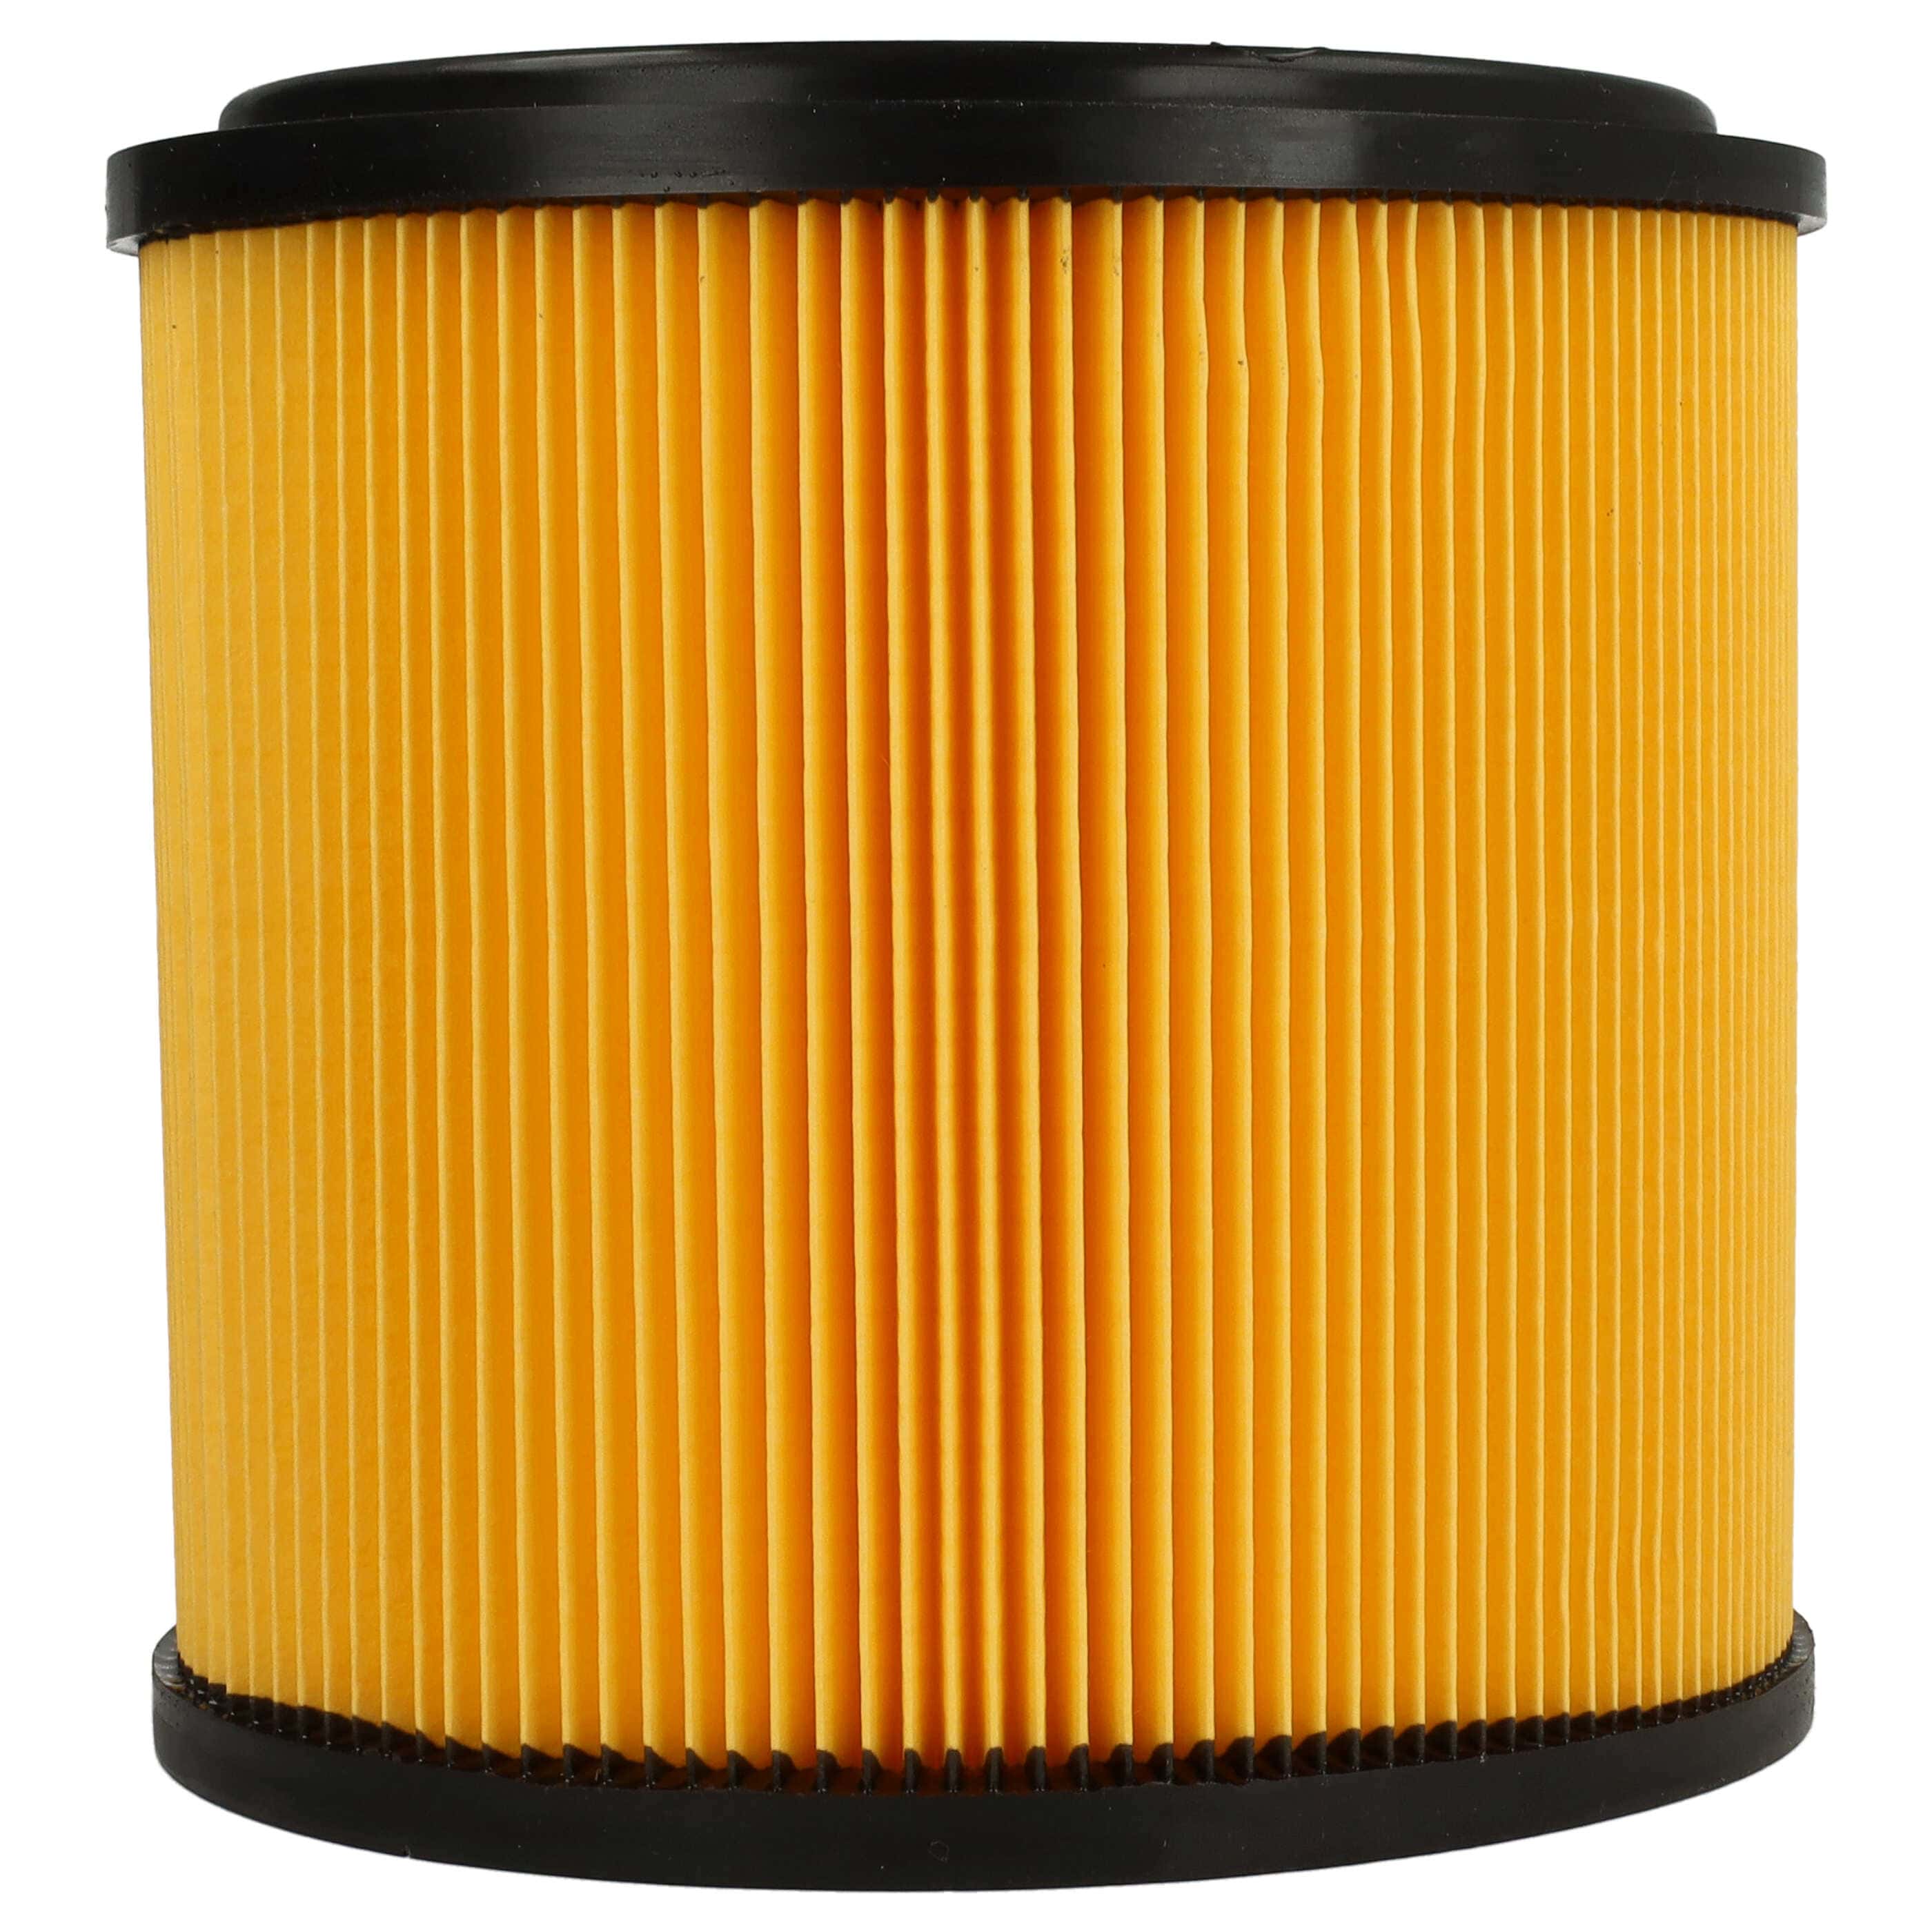 Filtr do odkurzacza Aqua Vac zamiennik Grizzly 91092030 - filtr fałdowany, czarny / żółty